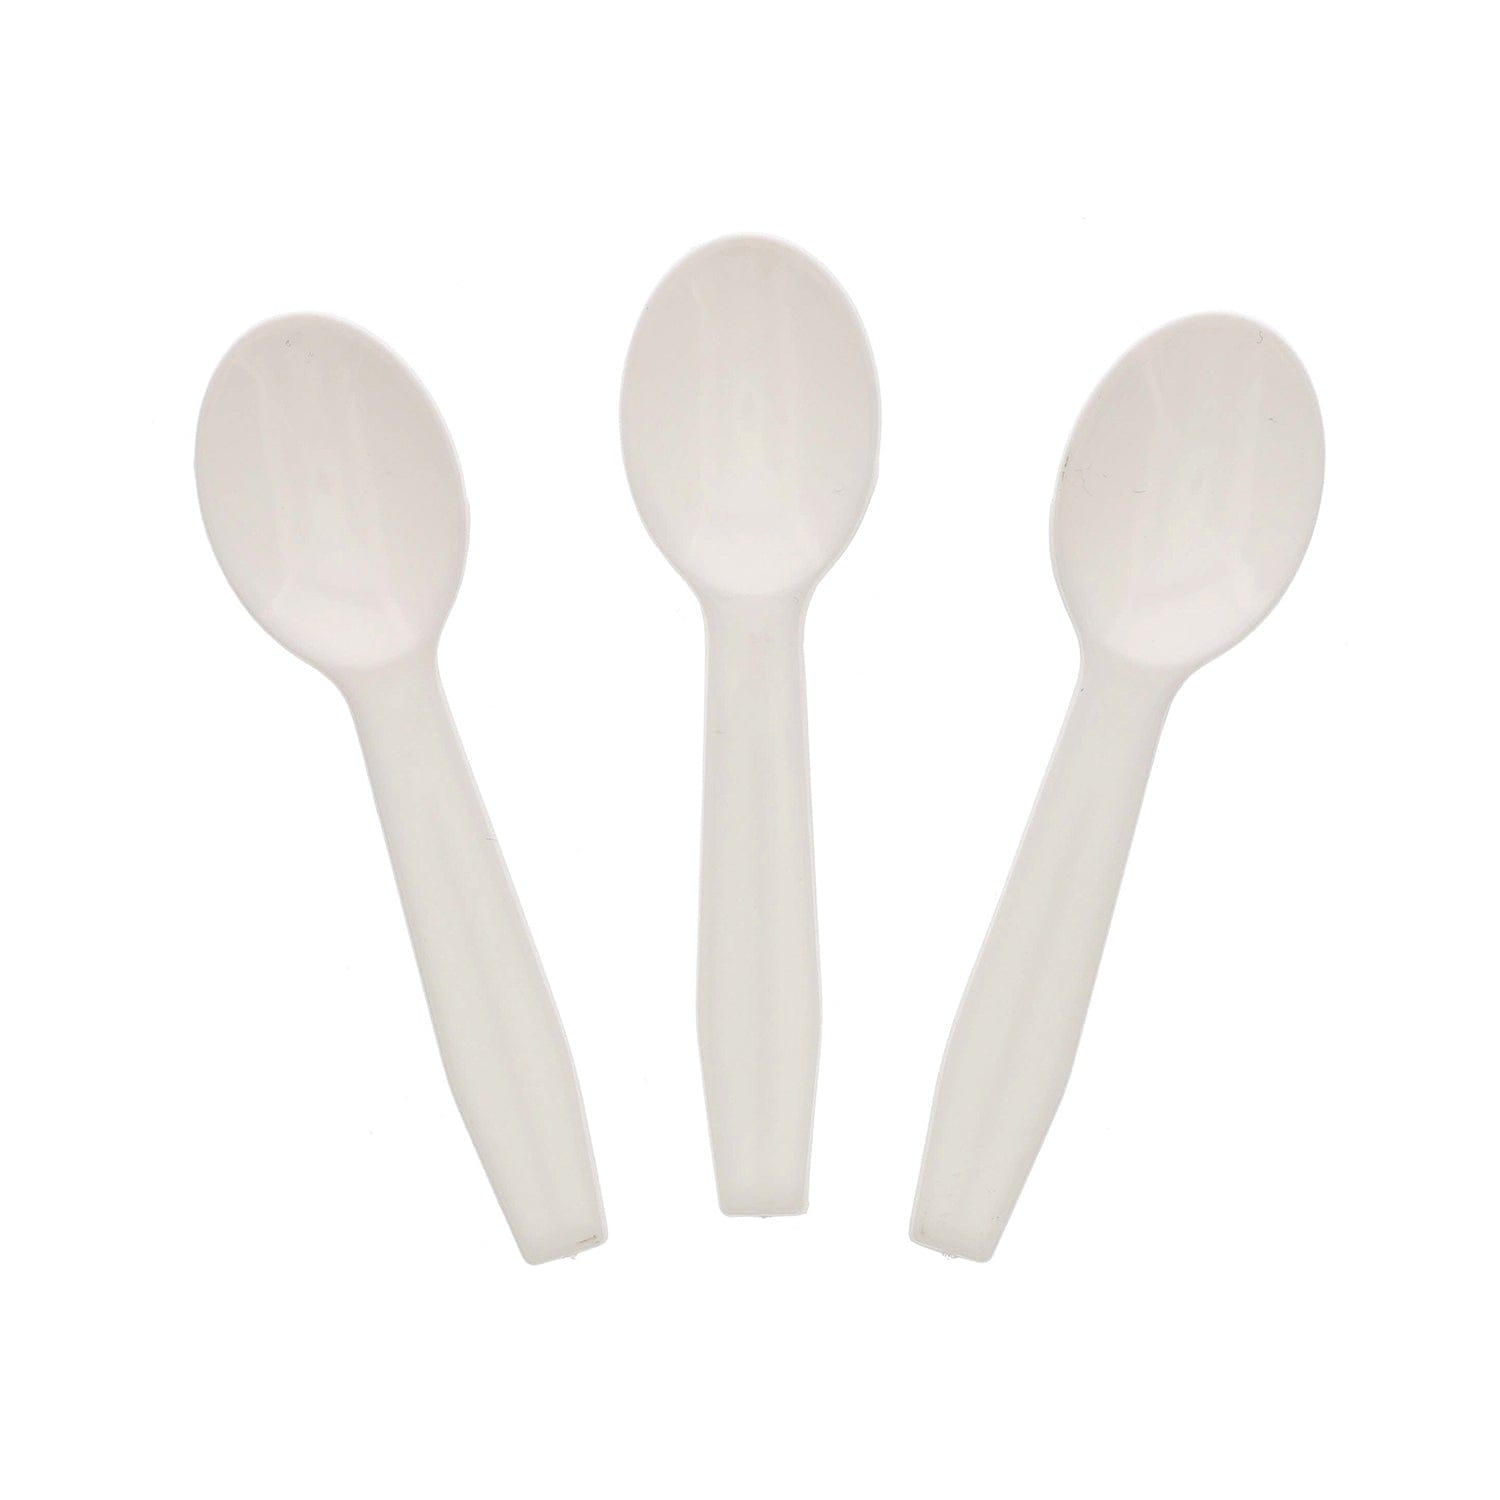 Plastic Taster Spoons